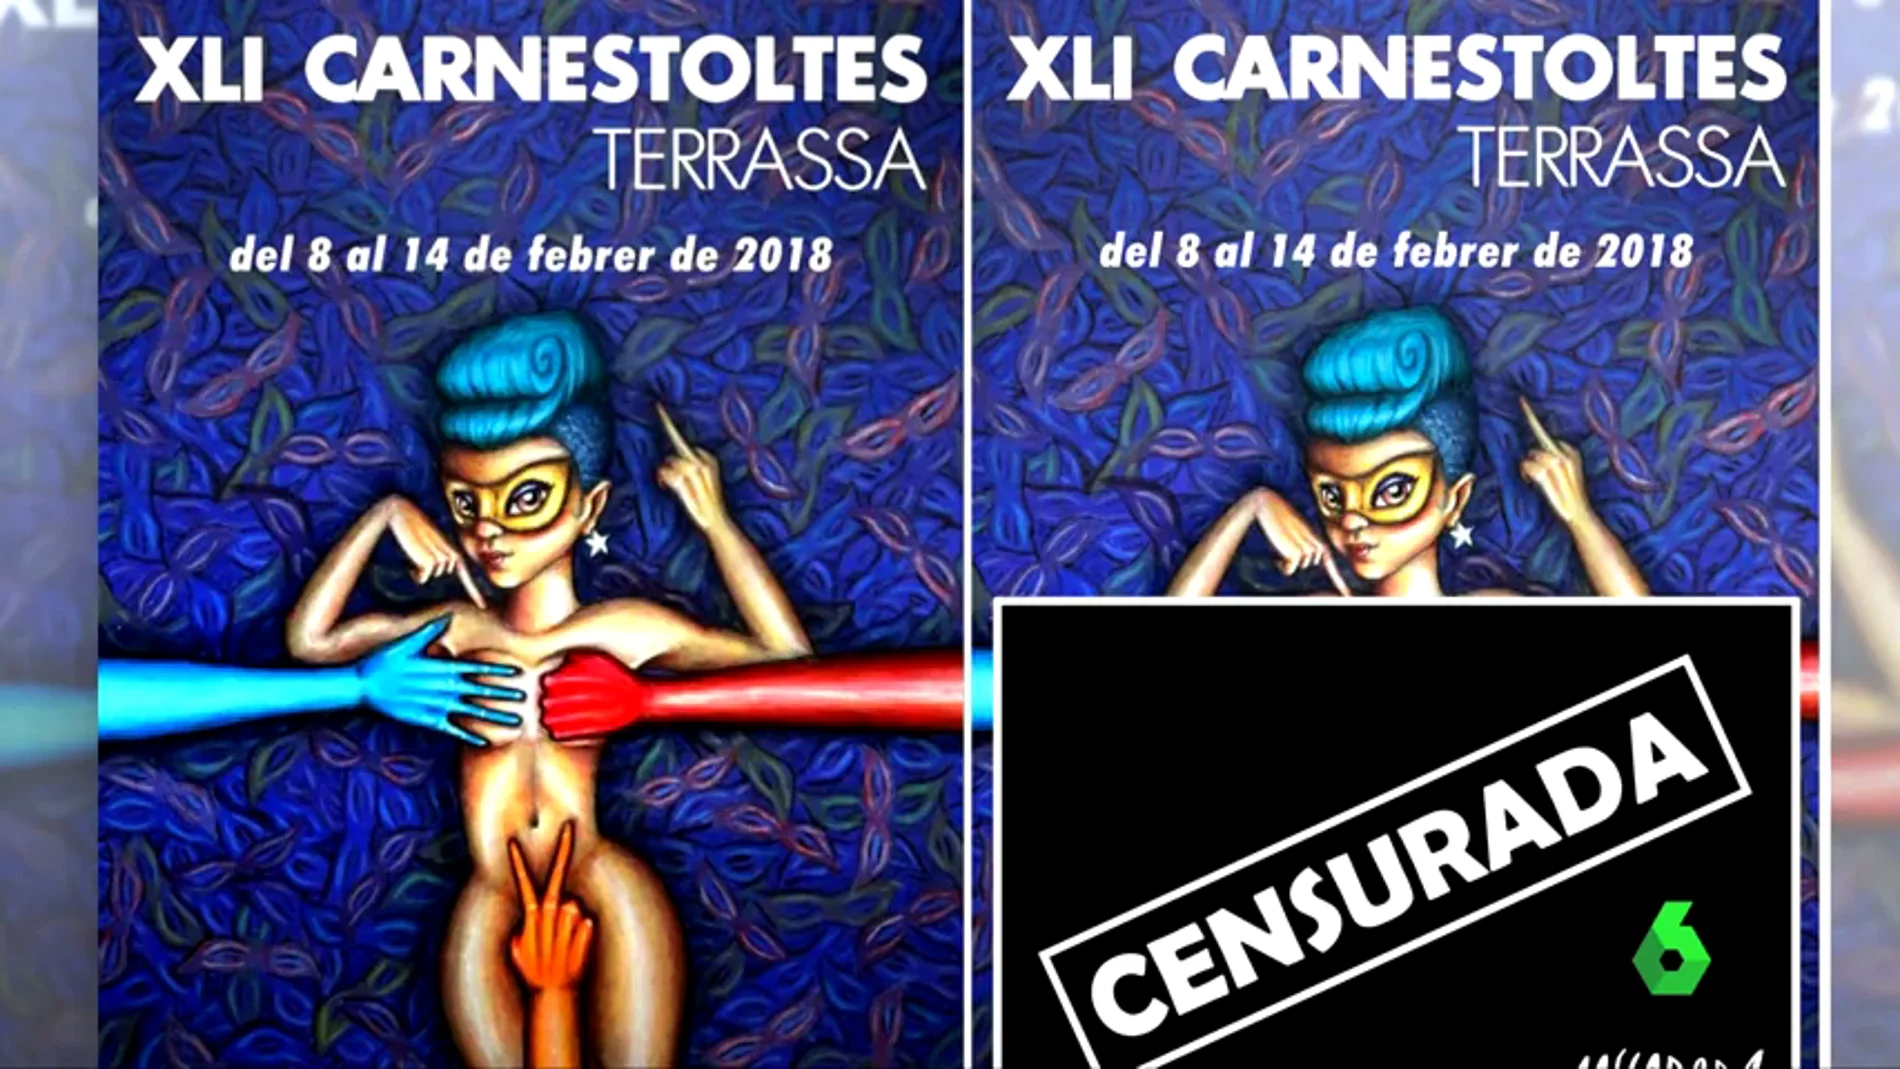 El polémico cartel del Carnaval de Terrassa aparece ahora con el mensaje "censurada"